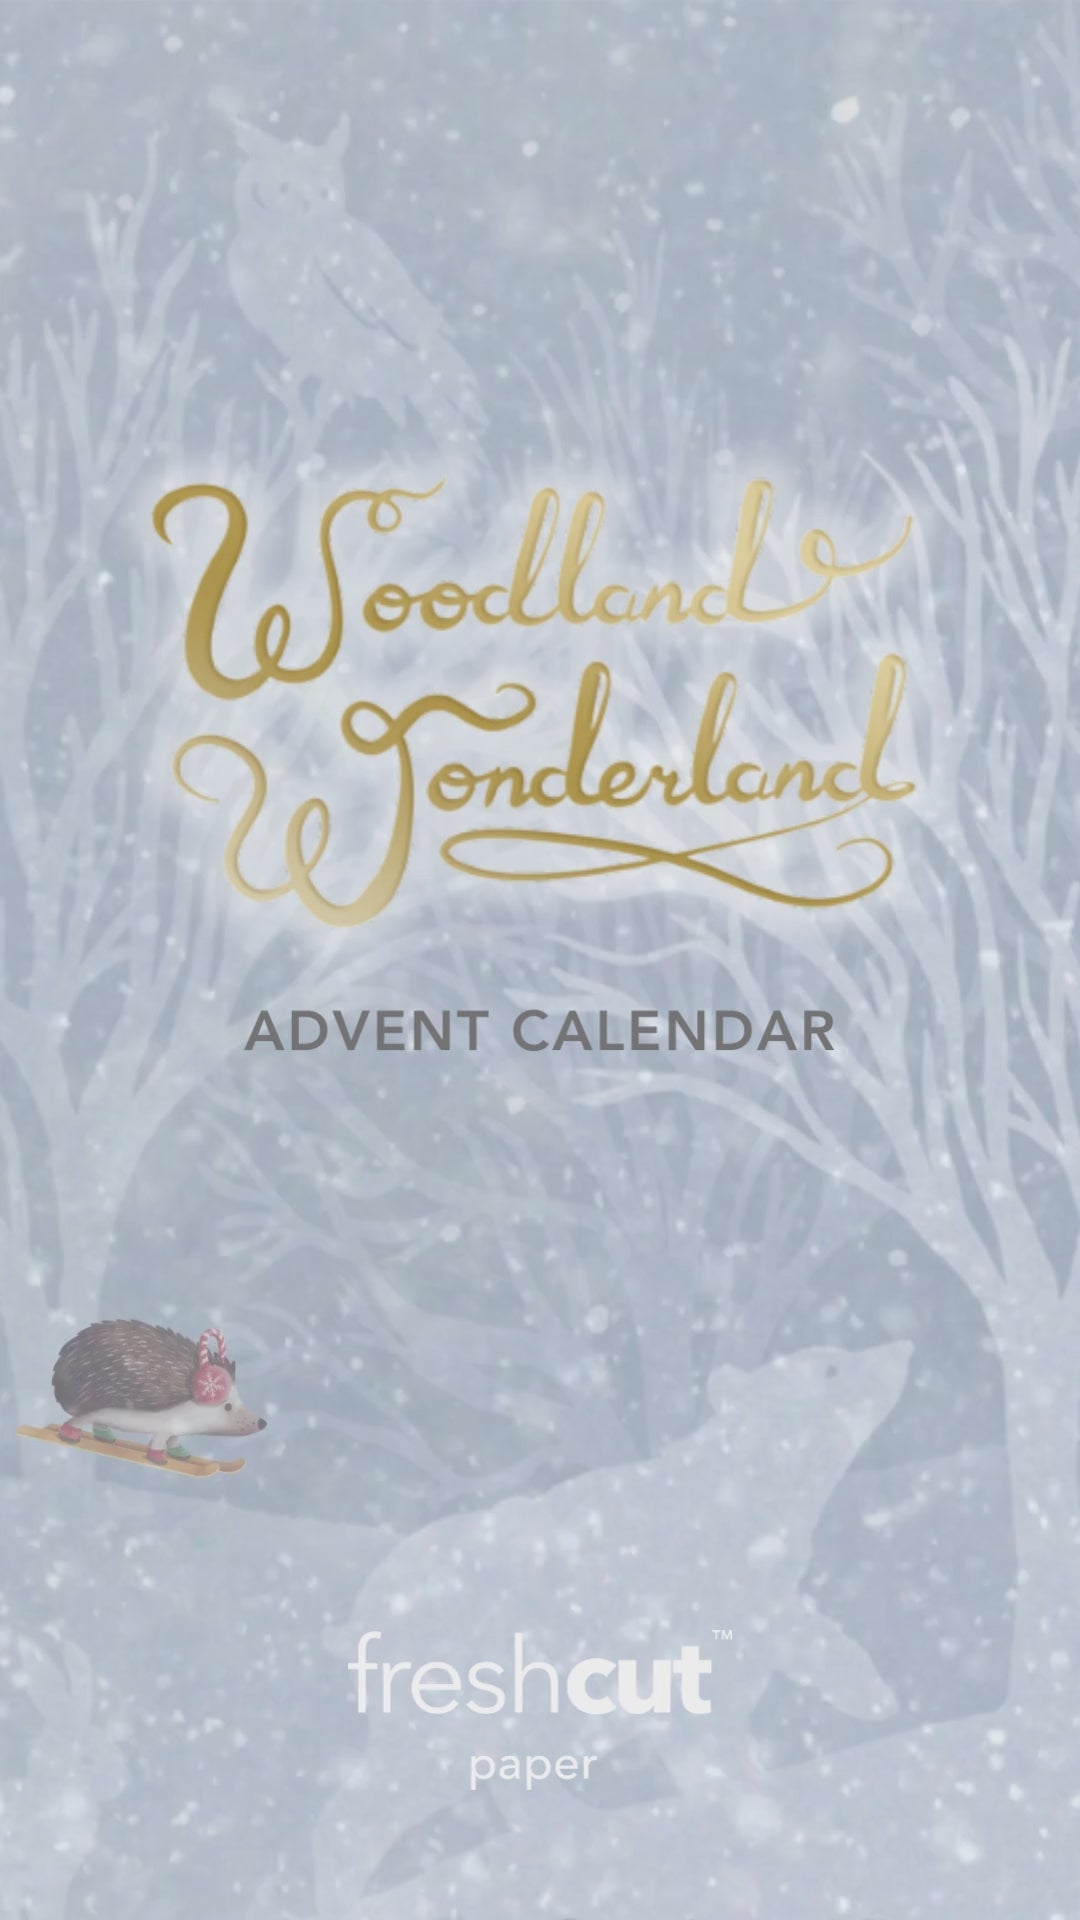 Woodland Wonderland Advent Calendar